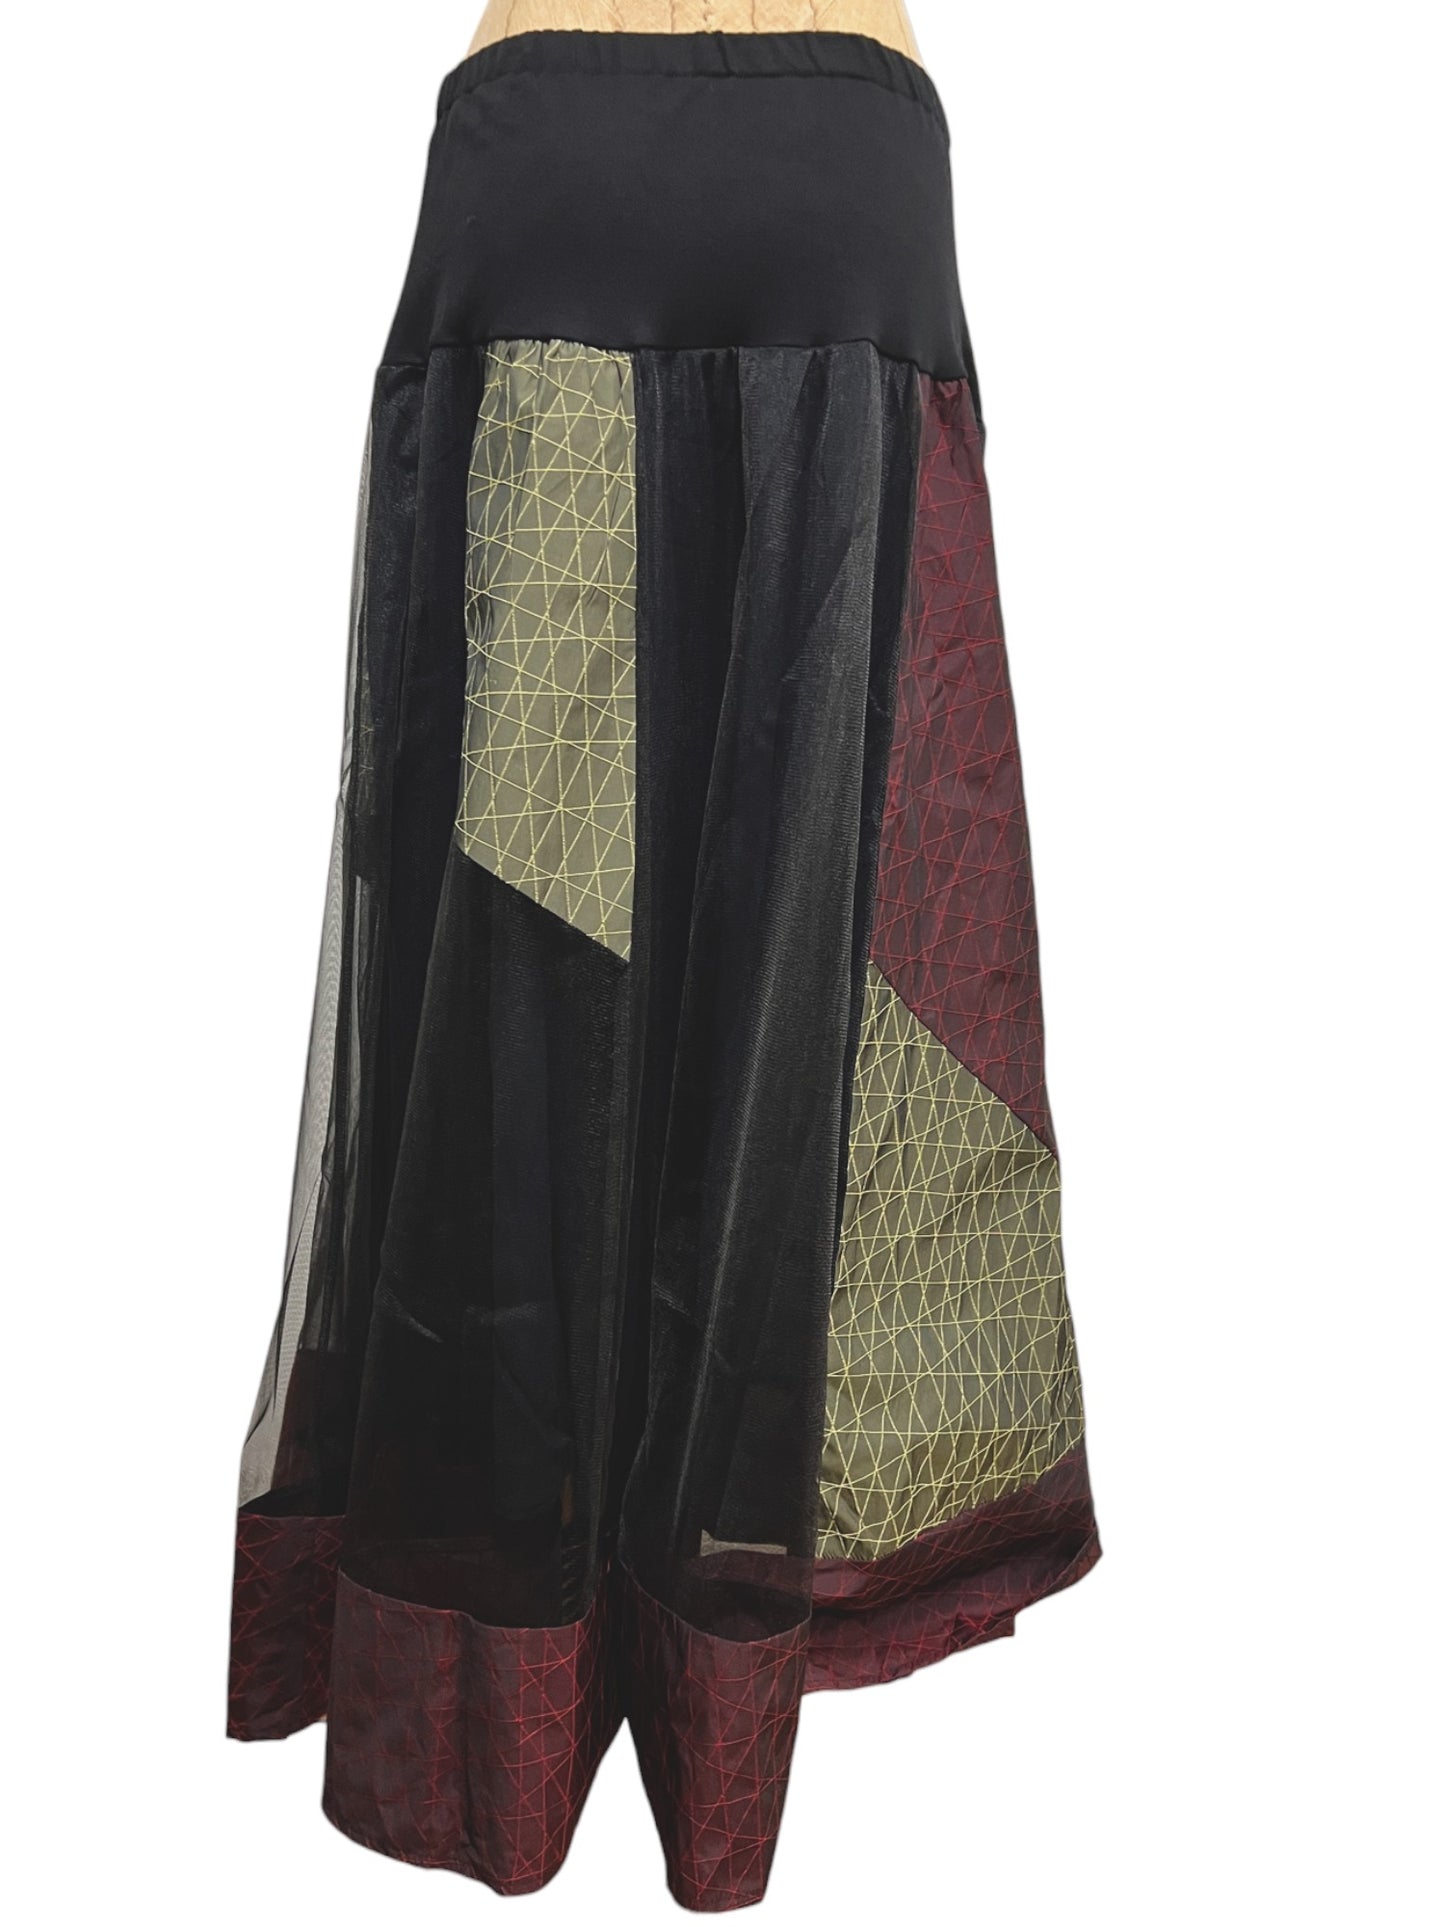 Colorblock Skirt in Original